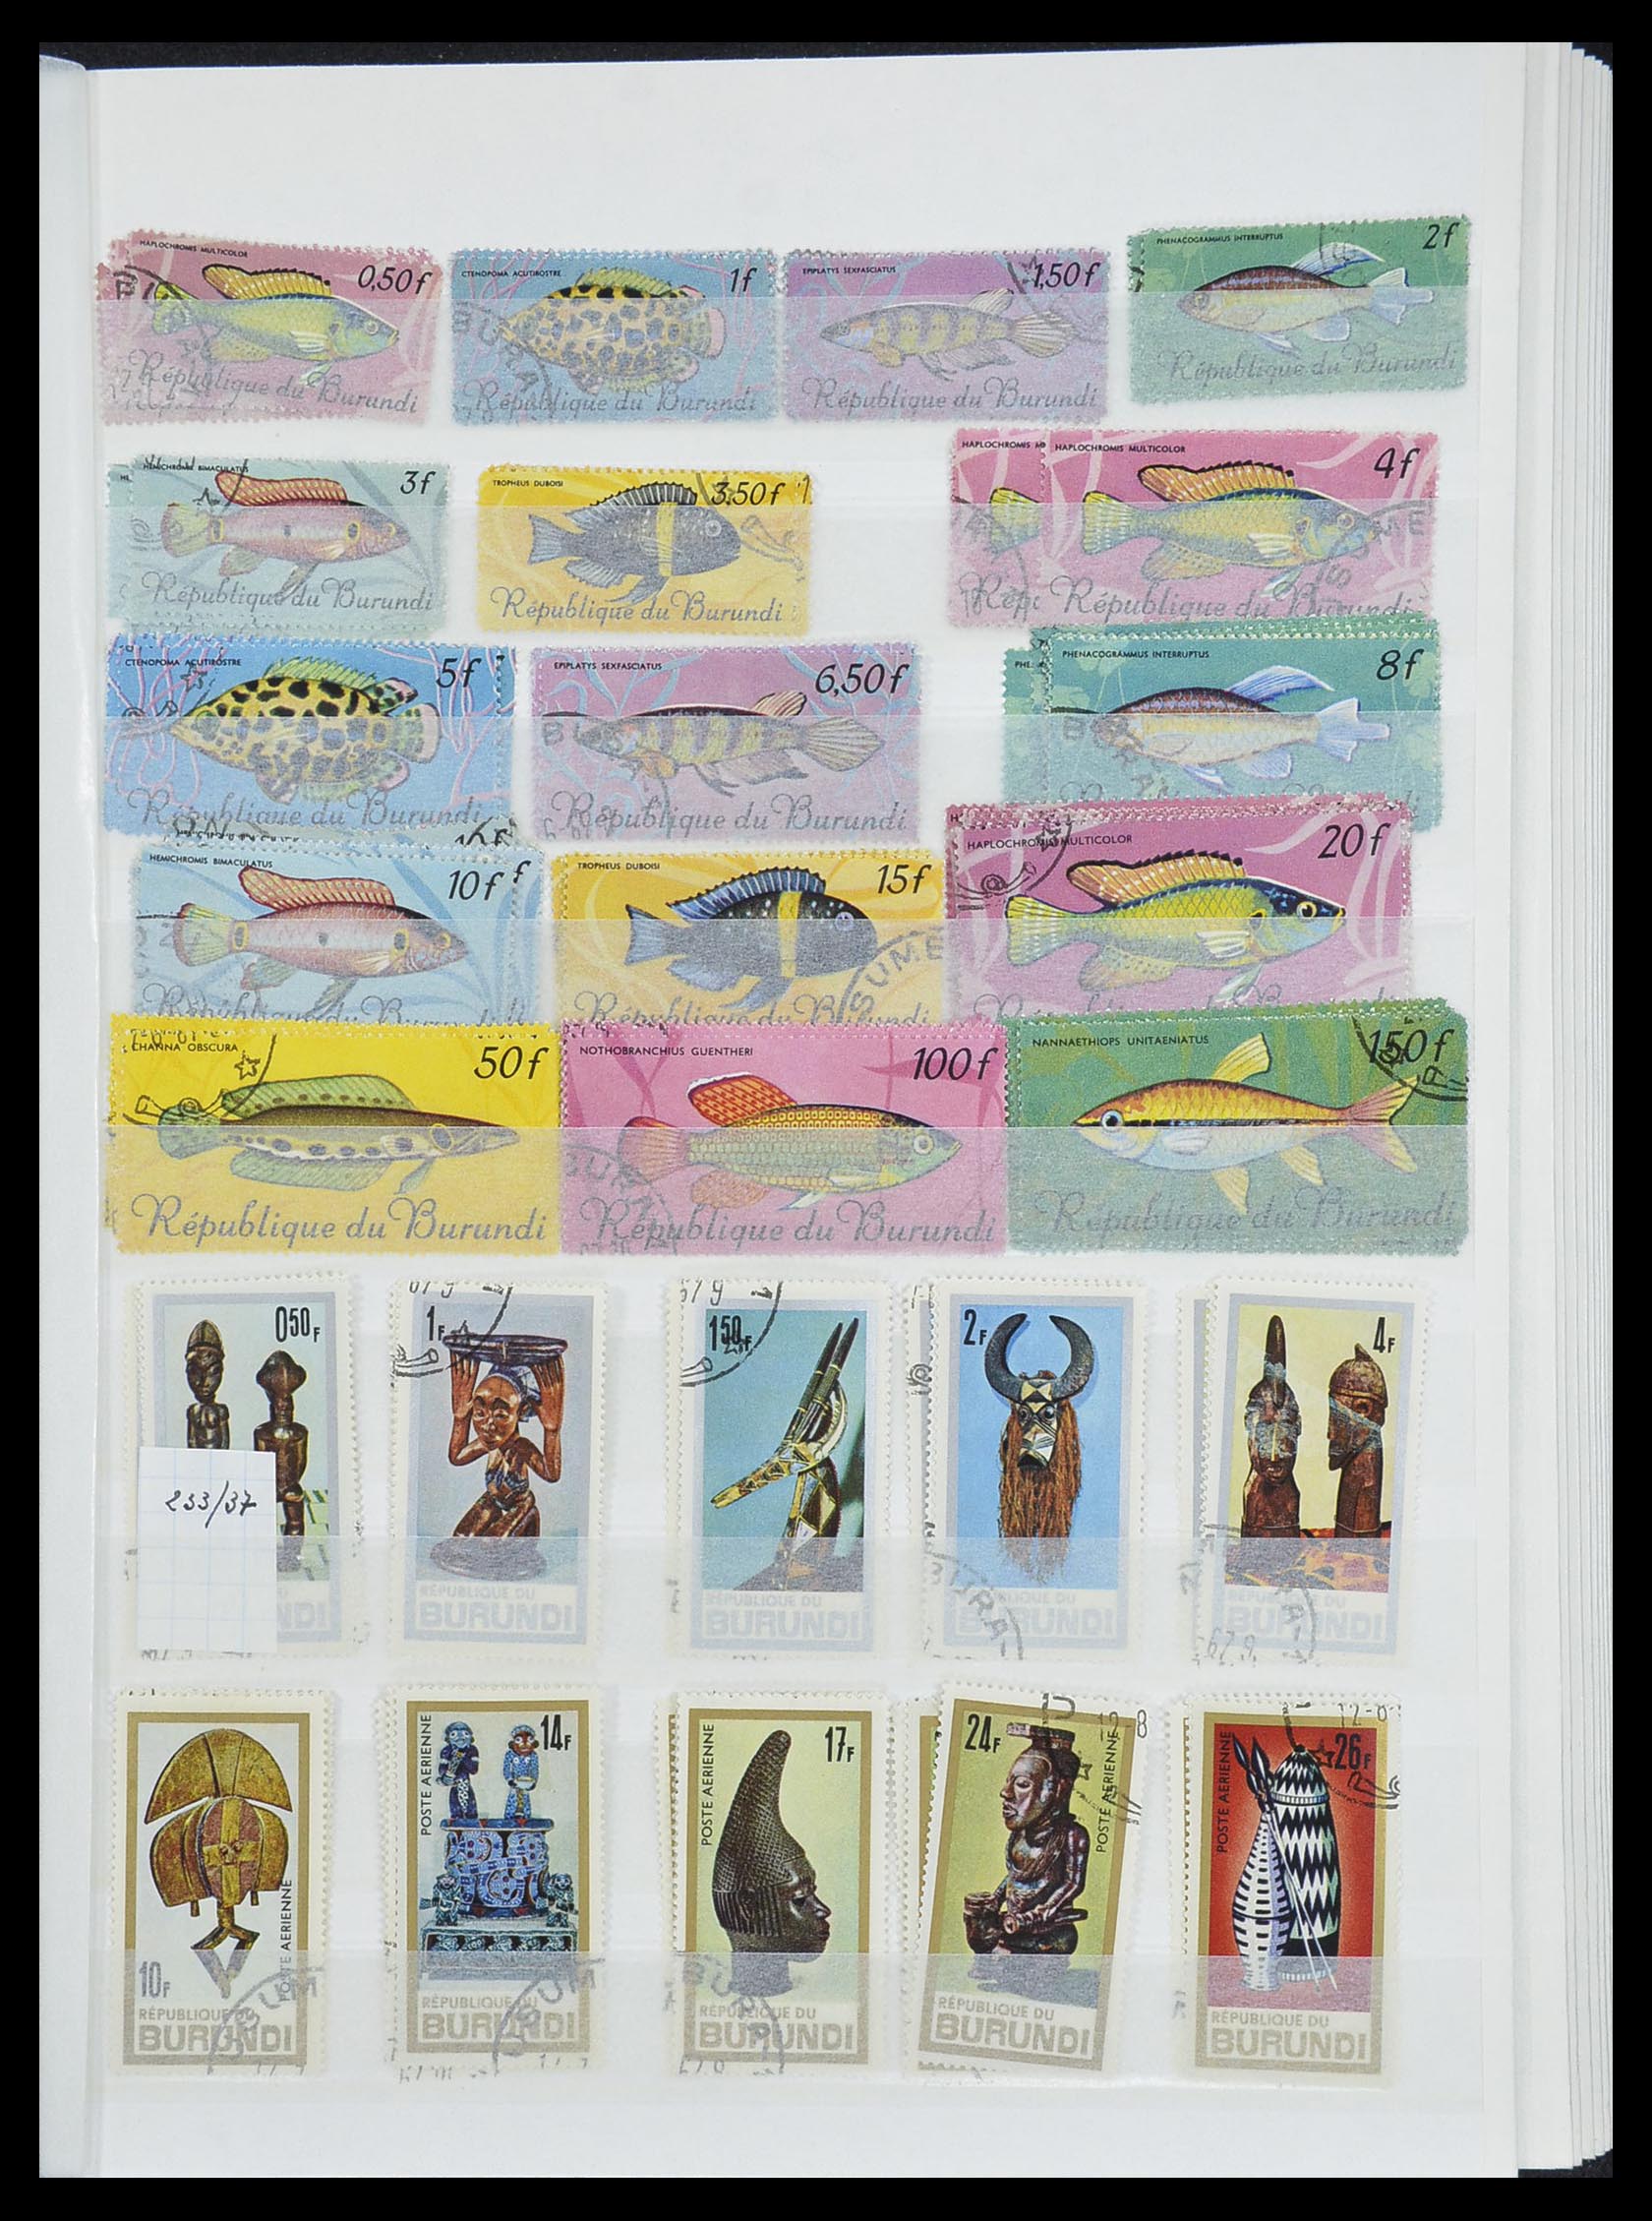 33855 019 - Stamp collection 33855 Burundi 1962-1974.